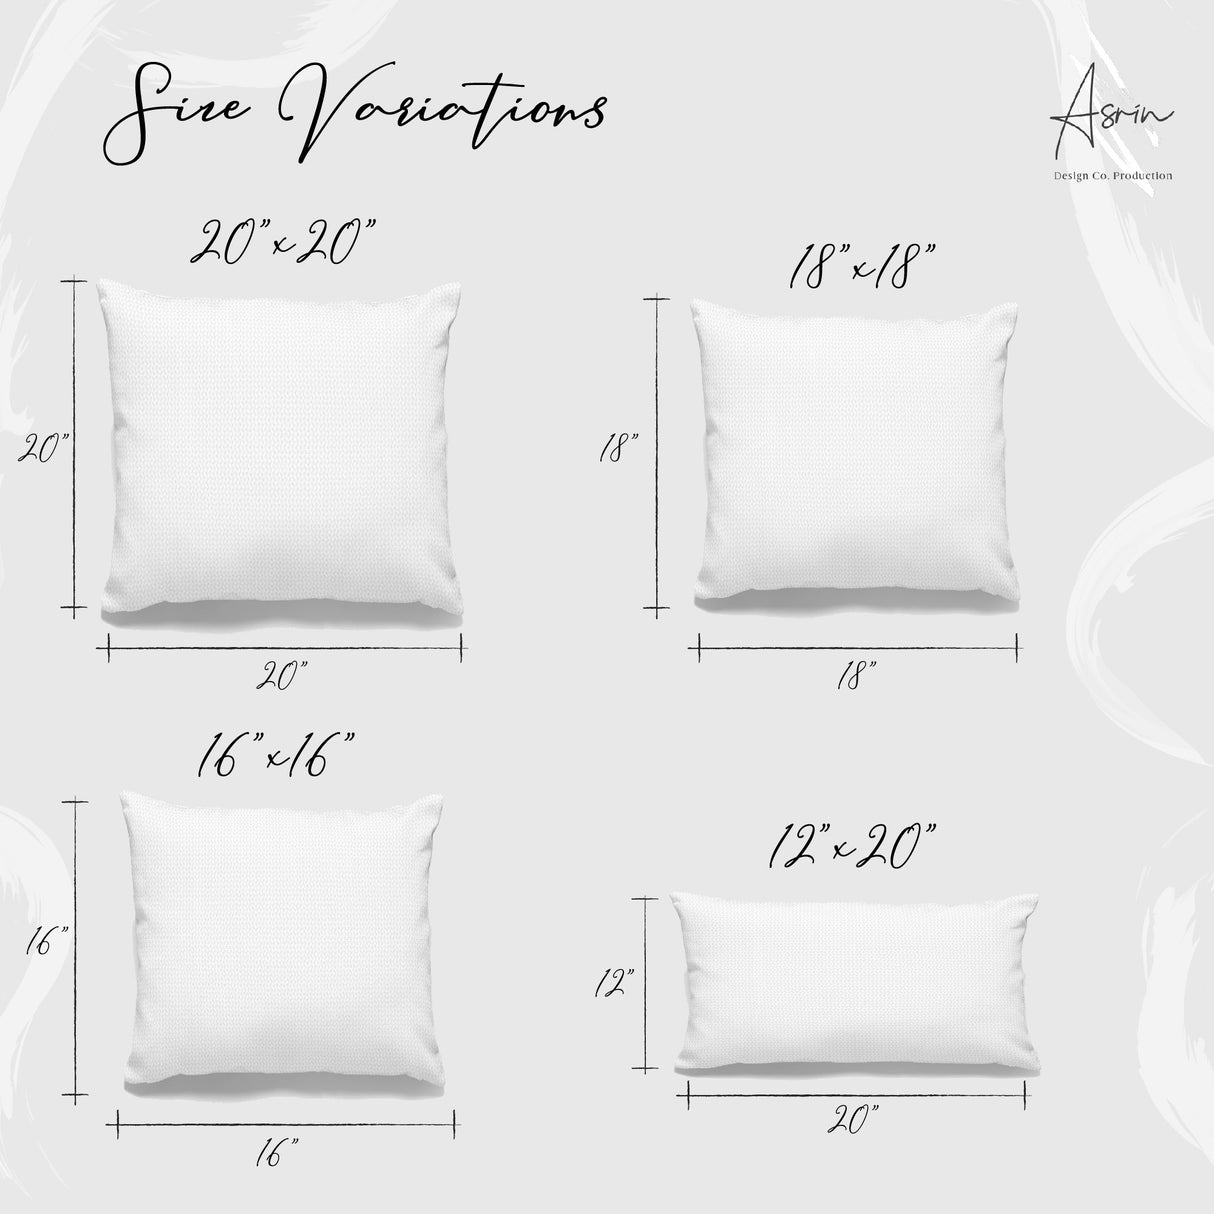 Custom Pillows, Name Pillow Covers, Custom Name Pillow, Last Name Pillow Cover, Personalized Pillow Cases, Personalized Pillow - Arria Home